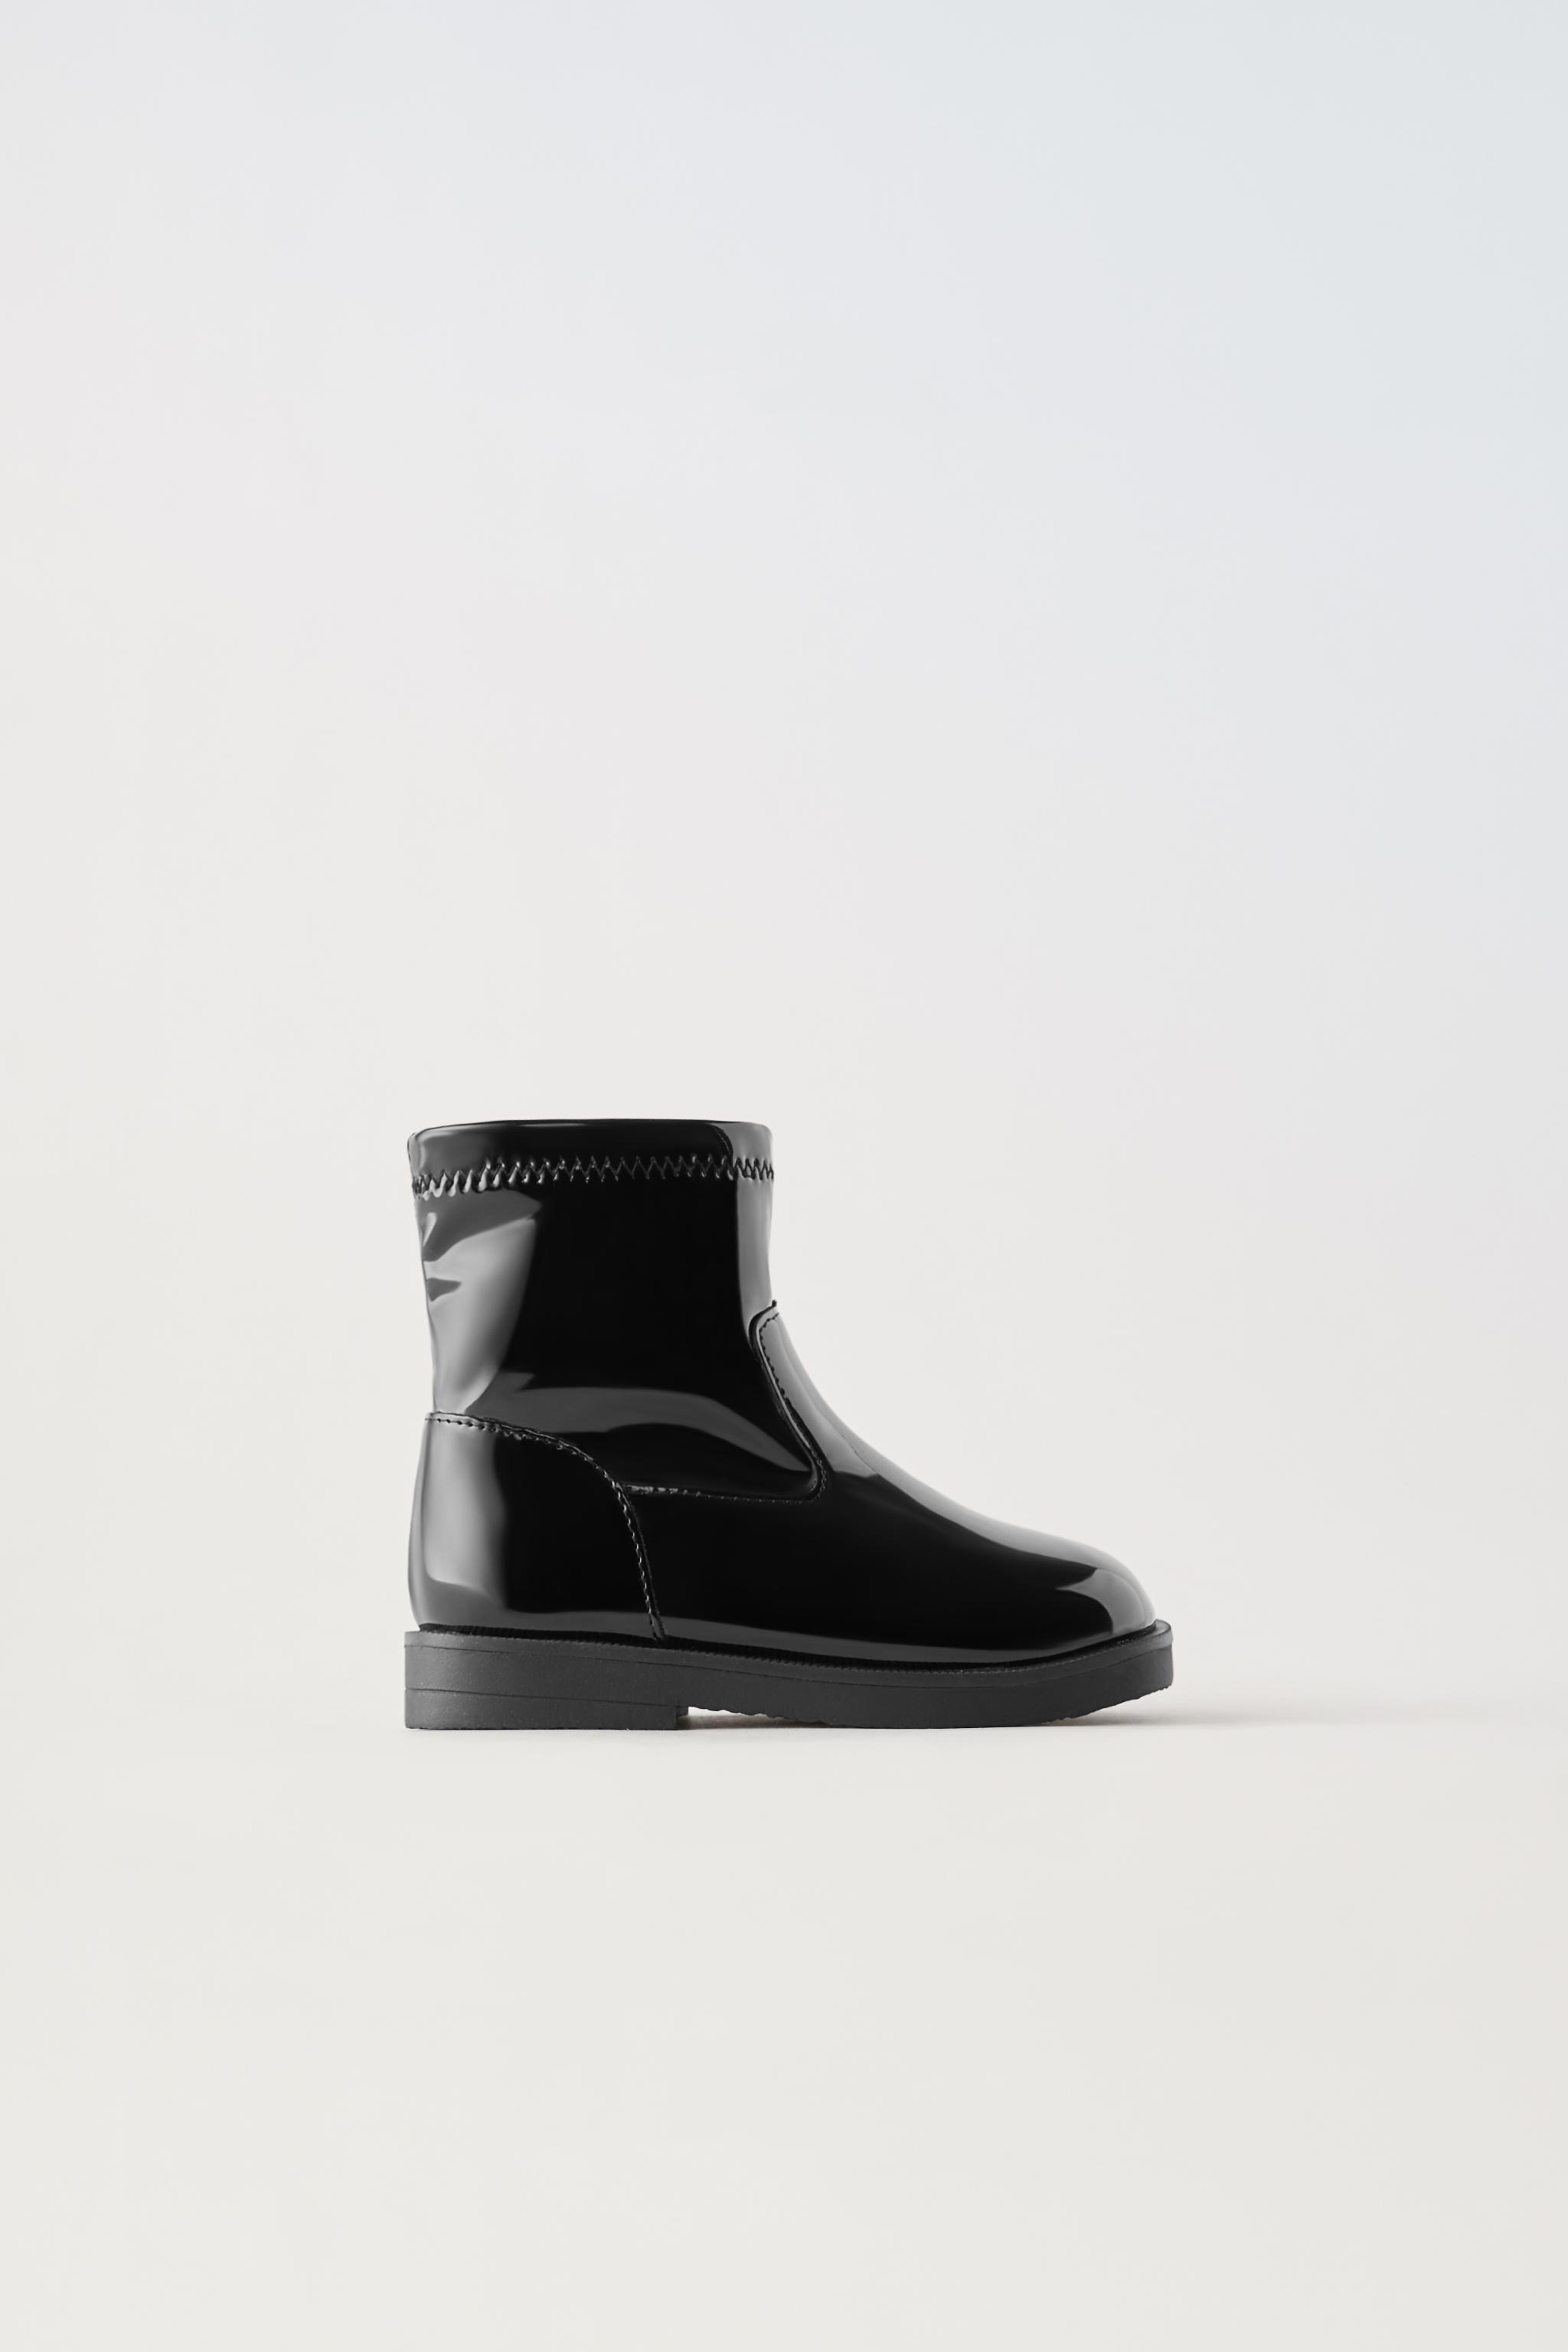 Zara agotará los botines negros con tobillera elástica y tacón cómodo que  llevarás con vaqueros este invierno